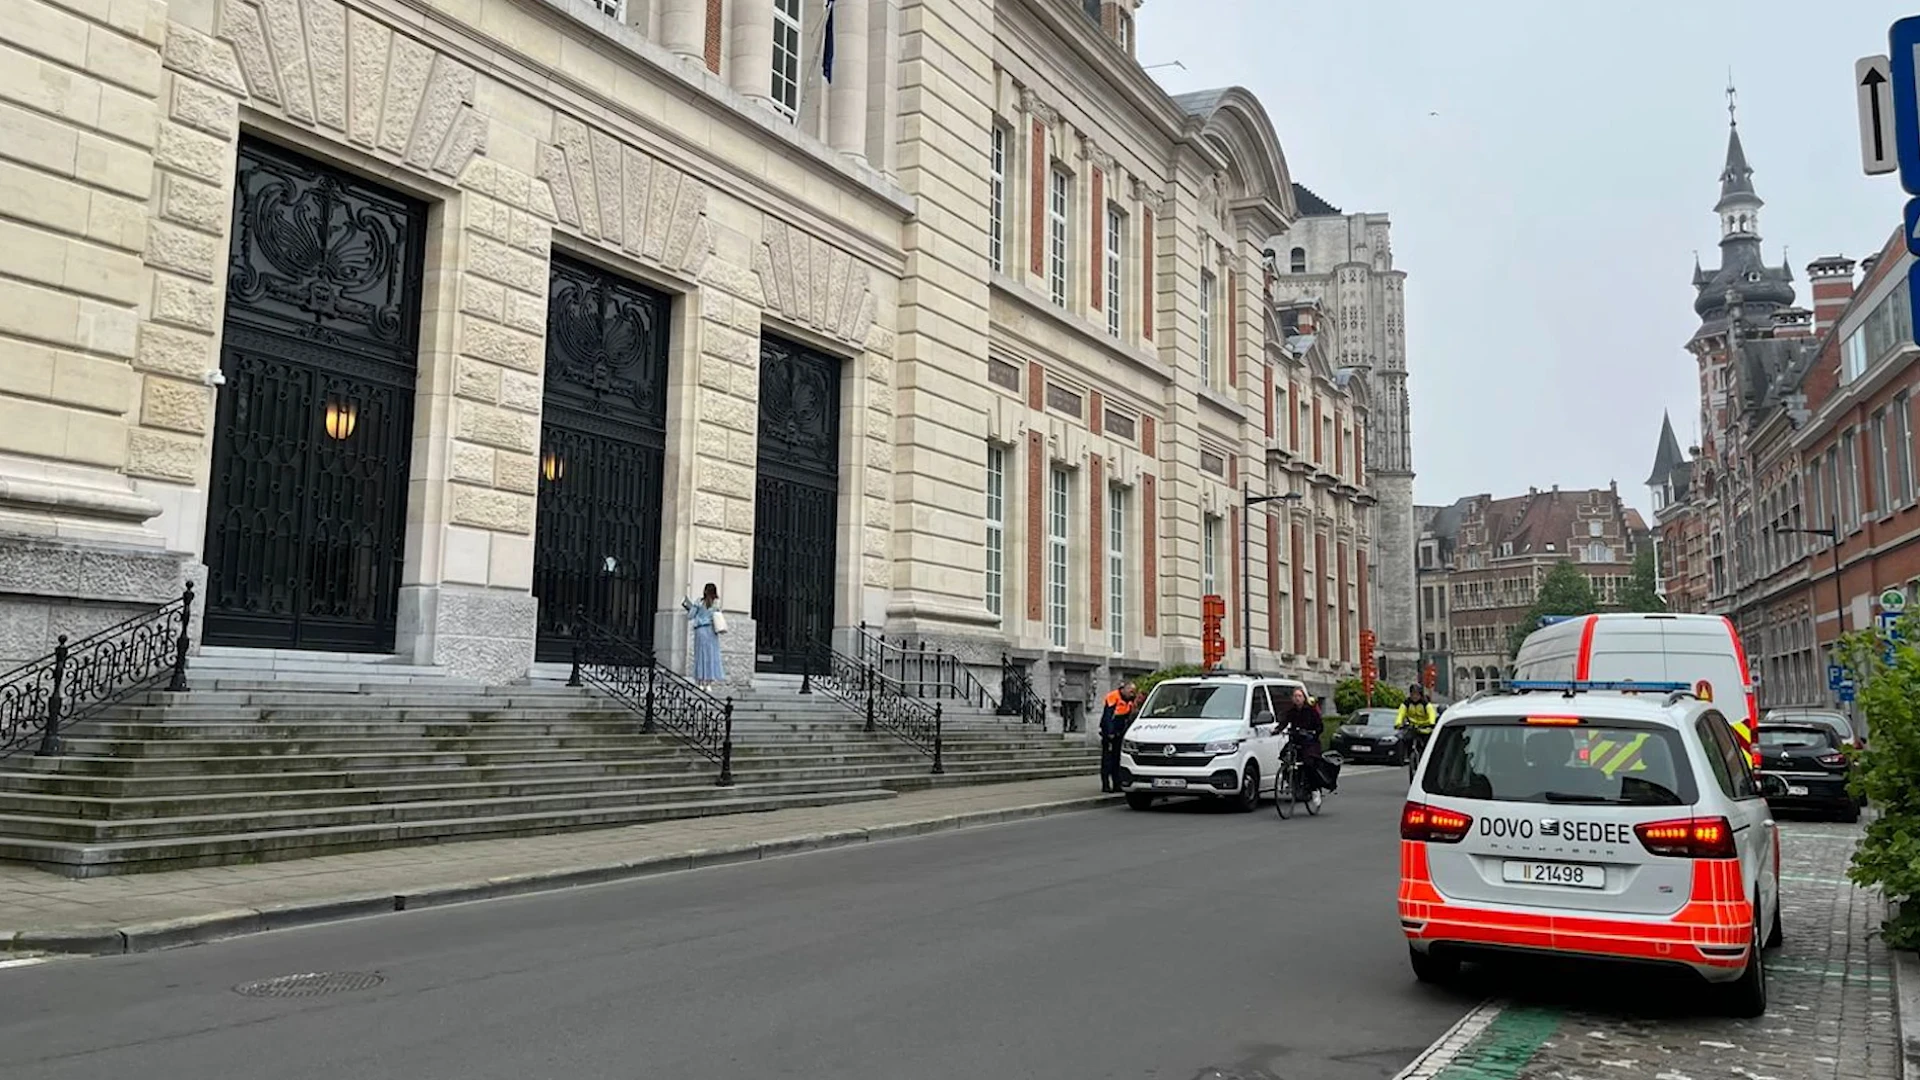 DOVO moet uitrukken voor verdacht pakketje aan justitiepaleis in Leuven... blijkt waspoeder